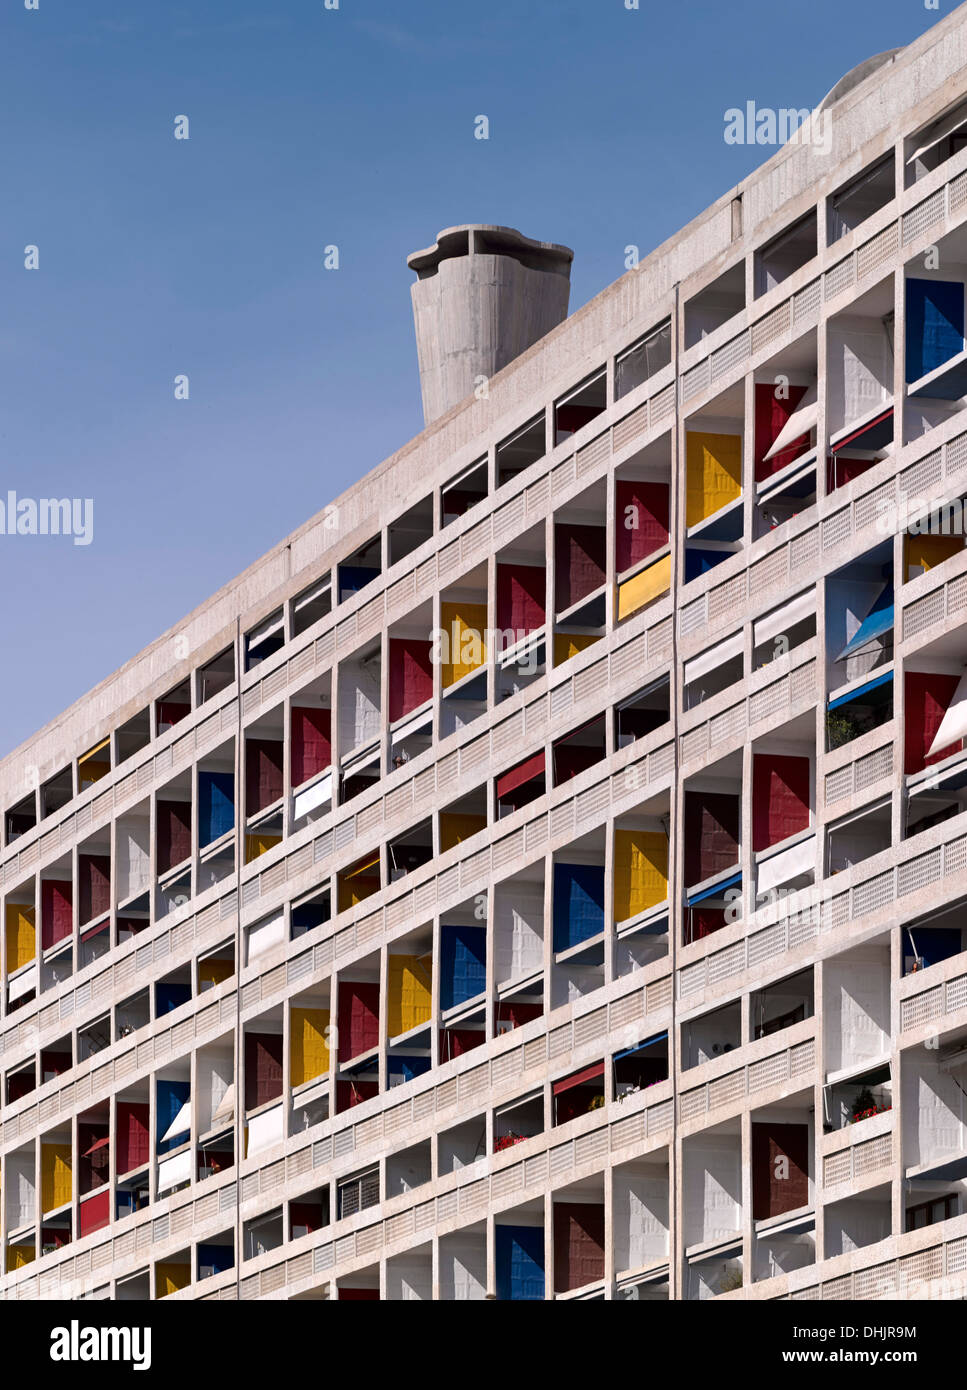 Unite d'habitation, Marseille, France. Architecte : Le Corbusier, 1952. Vue extérieure serré montrant balcons colorés et toit Banque D'Images